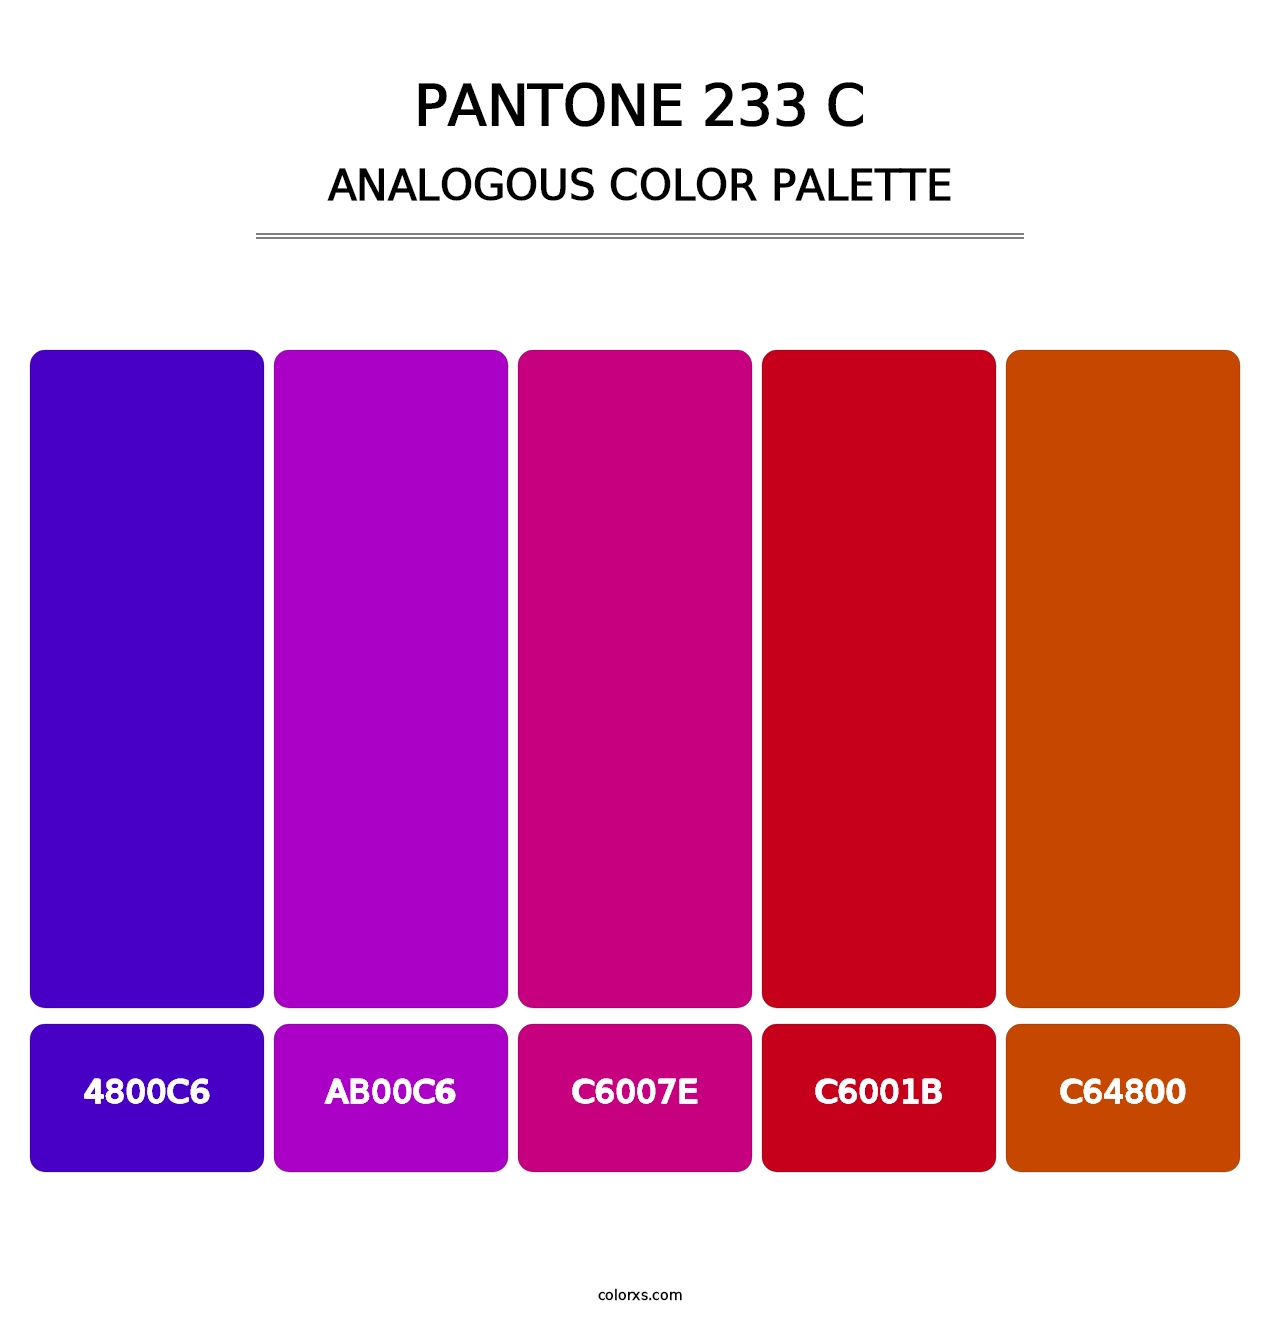 PANTONE 233 C - Analogous Color Palette